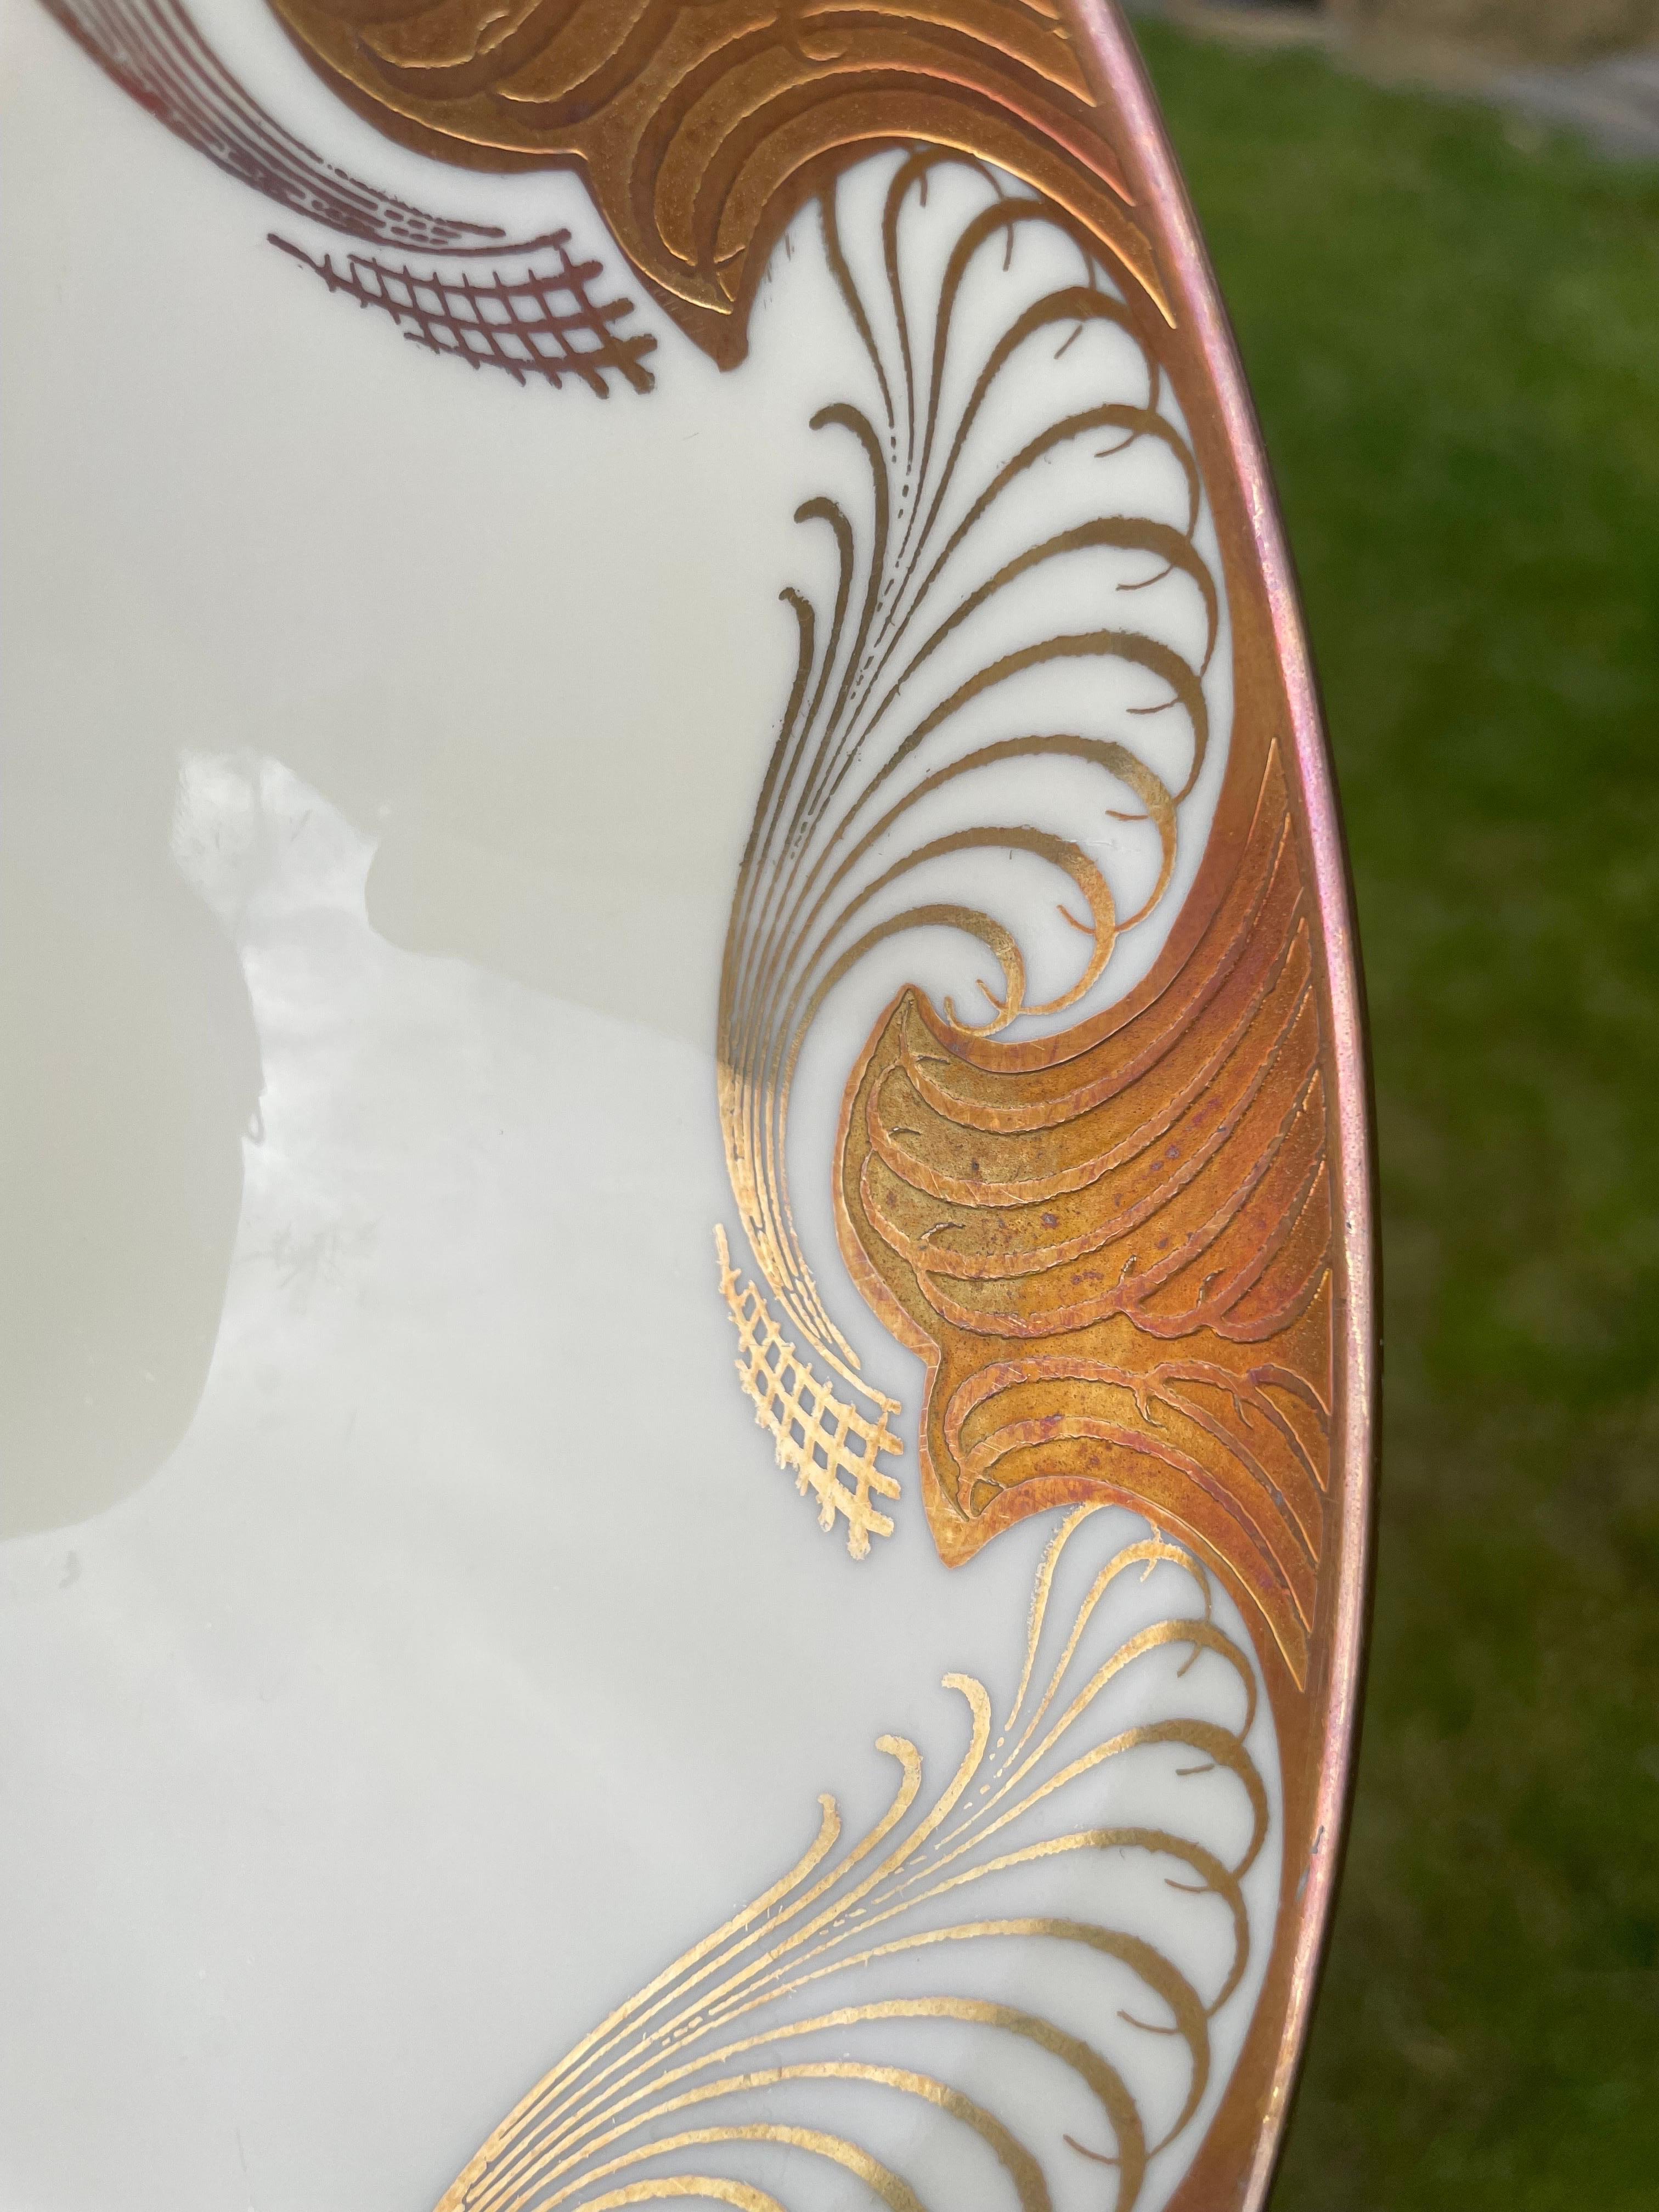 Alka Kunst Bavaria Oval Ivory White Golden Decorative Porcelain Bowl, 1960s For Sale 3